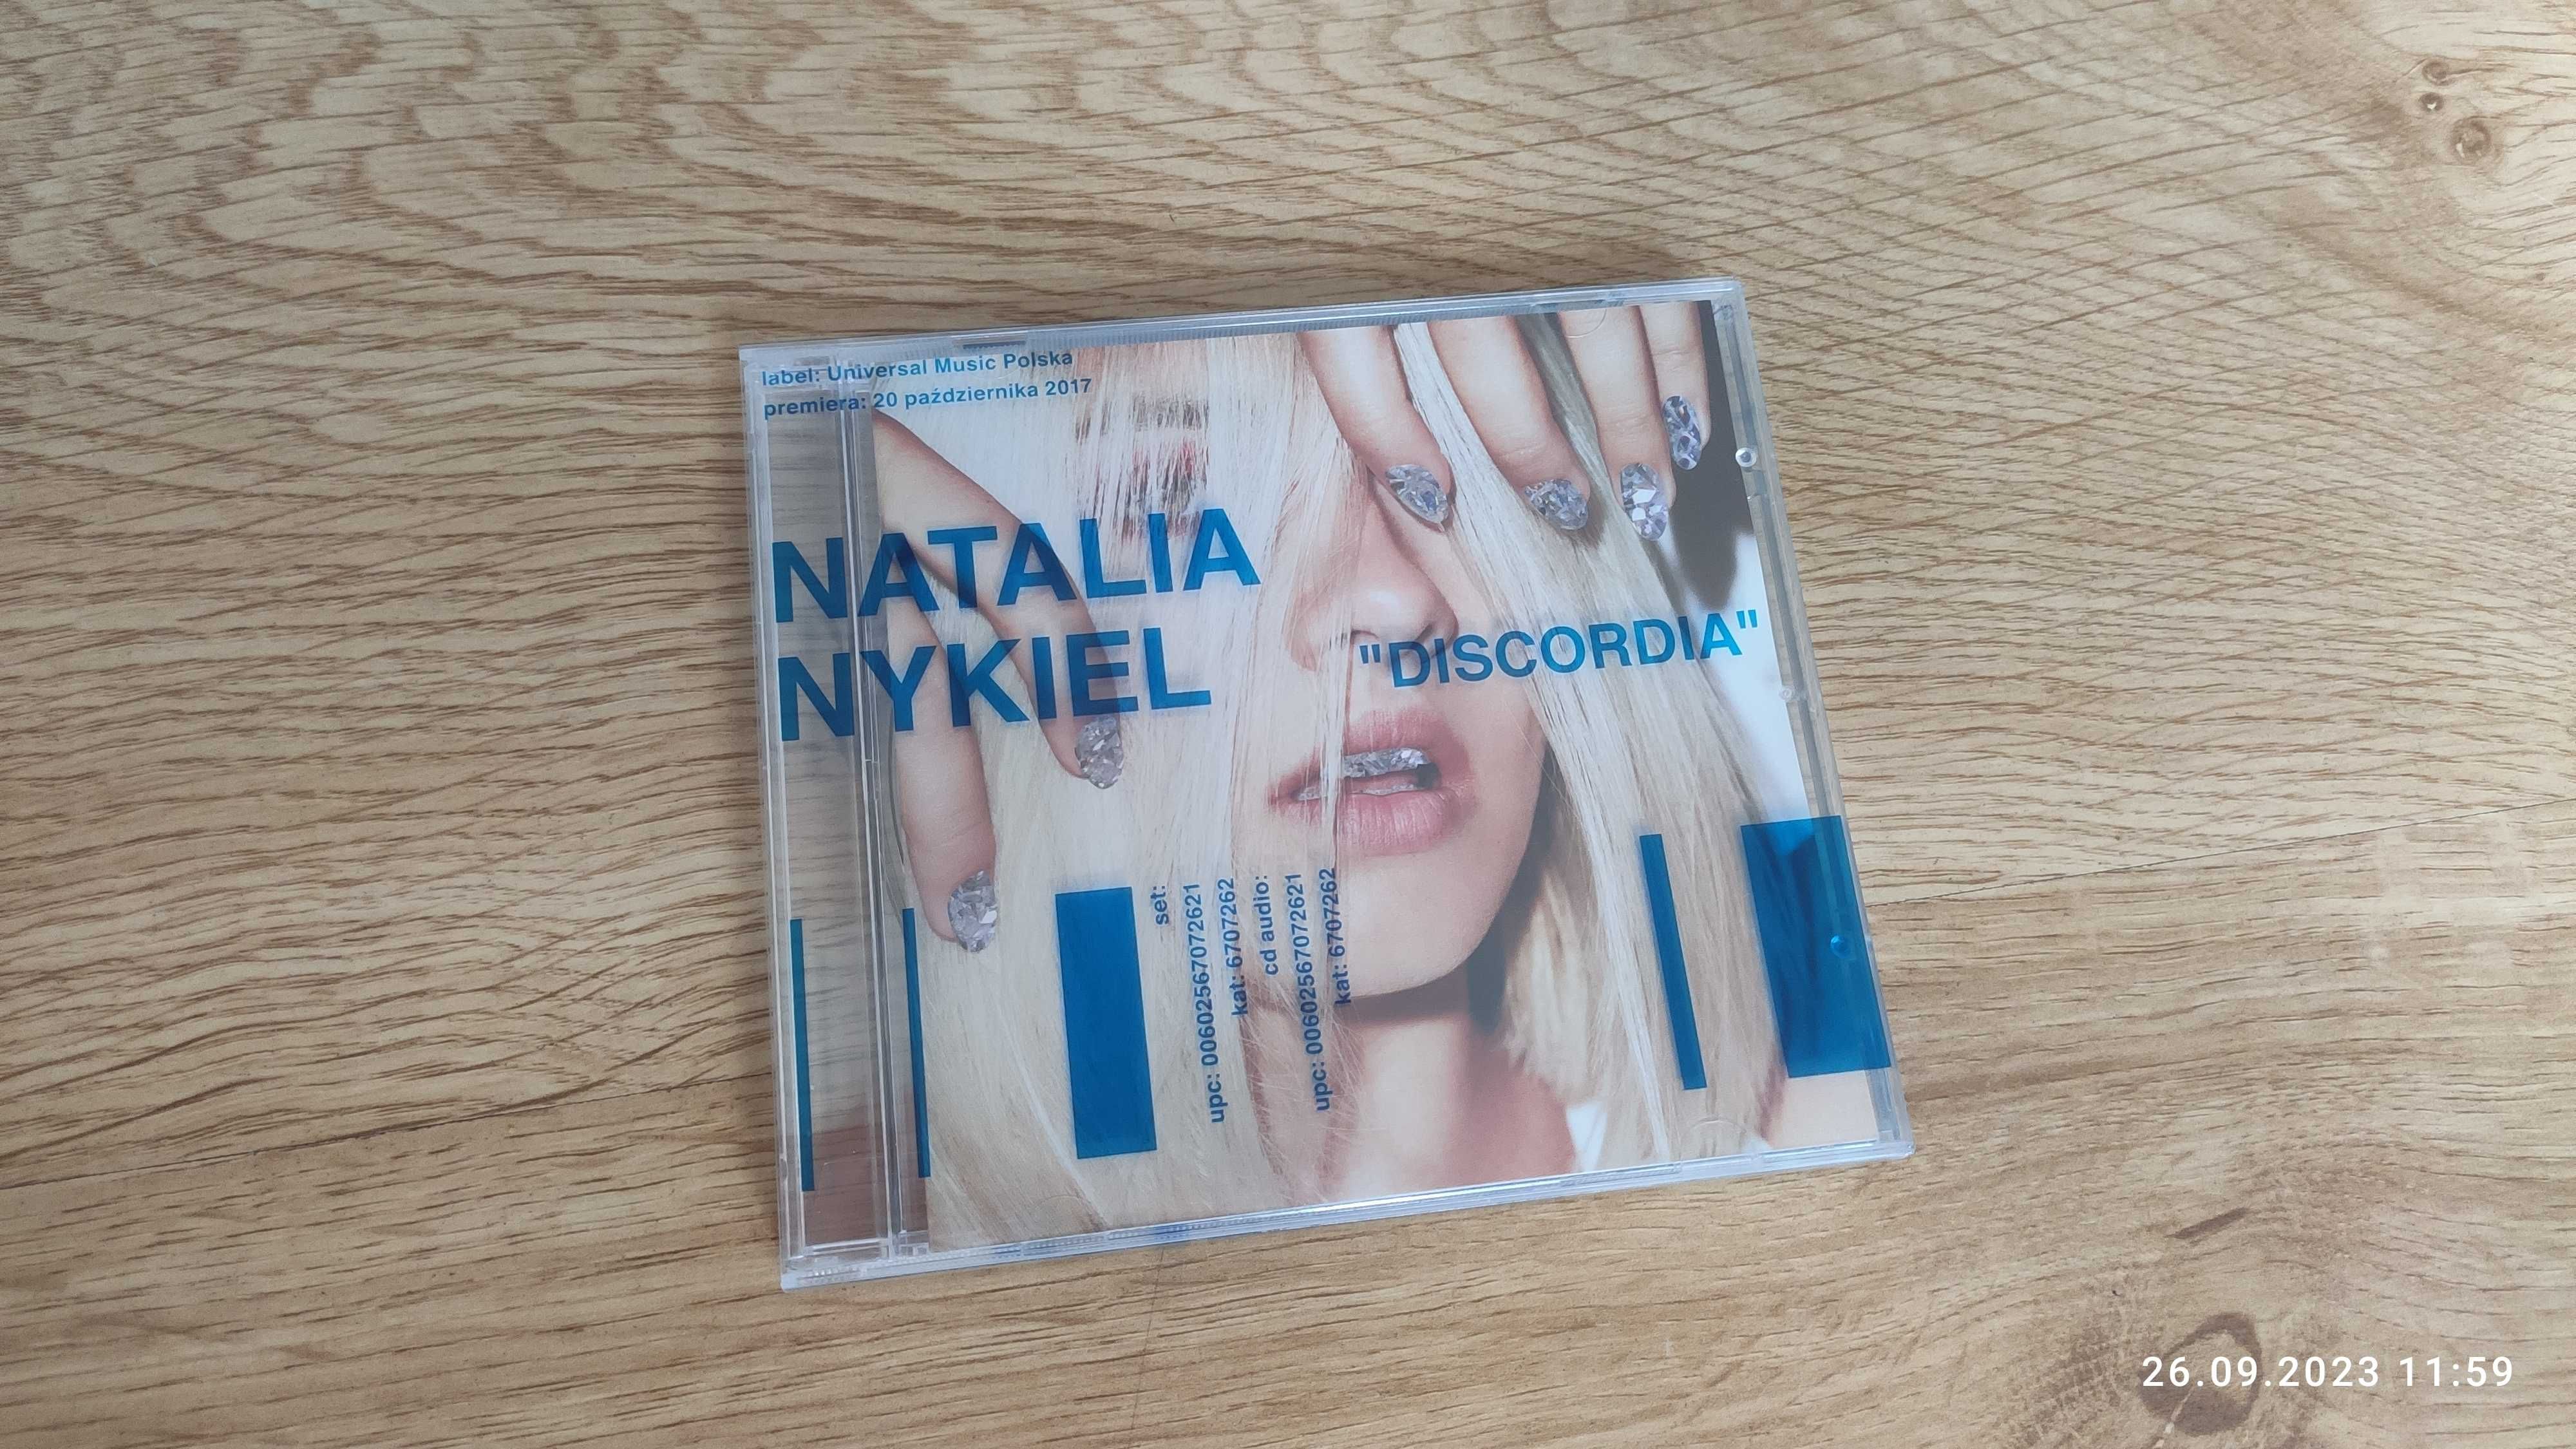 Natalia Nykiel DISCORDIA